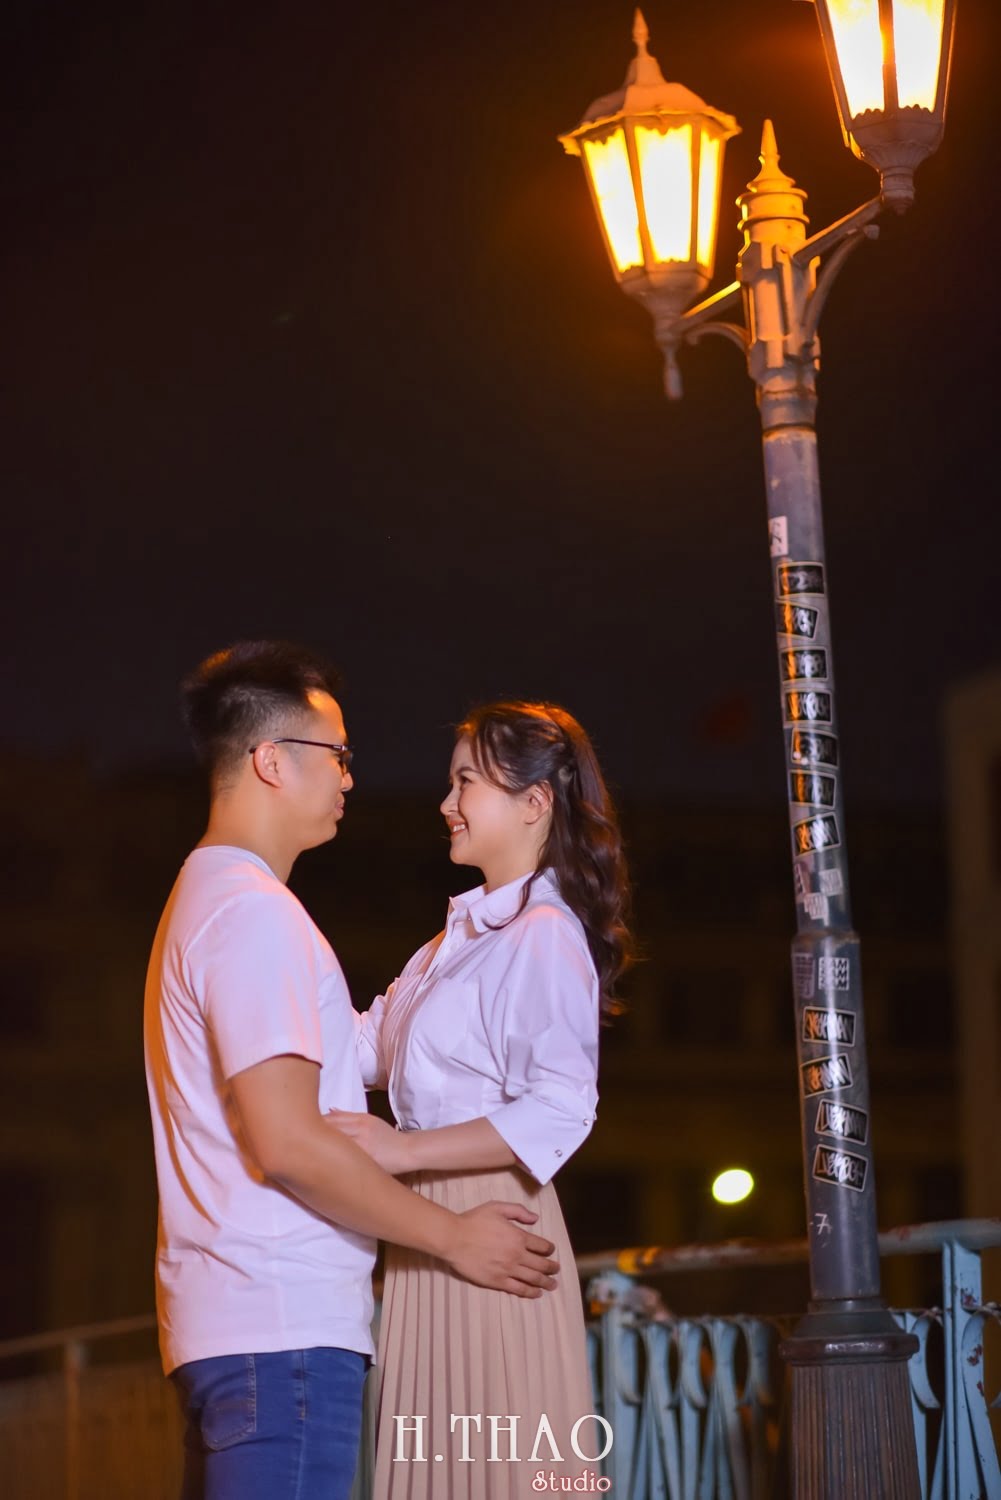 Anh chup couple ban dem 5 min - #2 Ý tưởng chụp ảnh ban đêm đẹp lung linh – HThao Studio